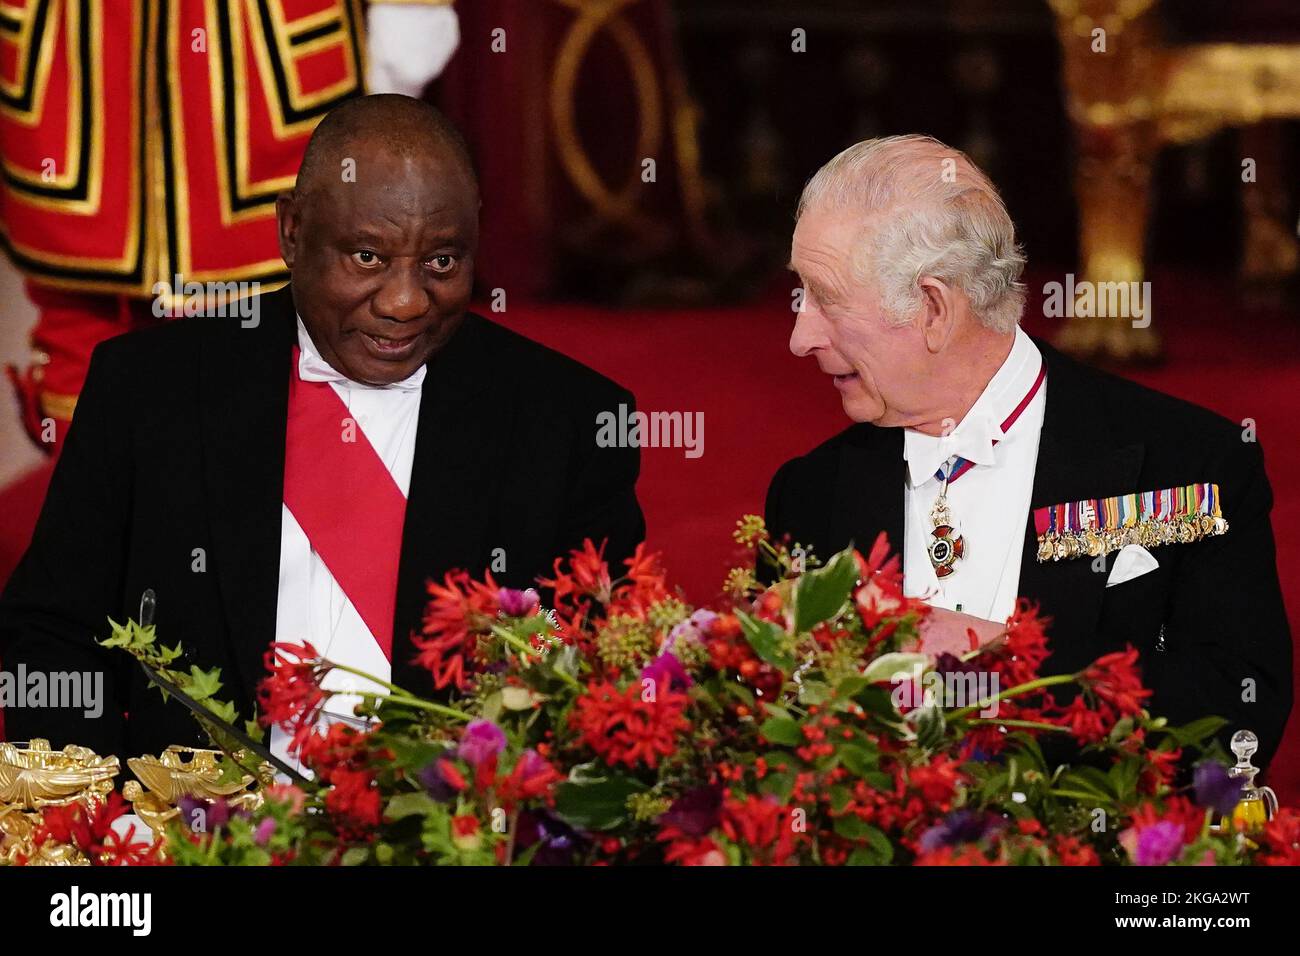 Le Président Cyril Ramaphosa de l'Afrique du Sud et le Roi Charles III s'assoient ensemble au banquet d'État qui s'est tenu au Palais de Buckingham, à Londres, lors de la visite d'État au Royaume-Uni par le Président sud-africain. Date de la photo: Mardi 22 novembre 2022. Banque D'Images